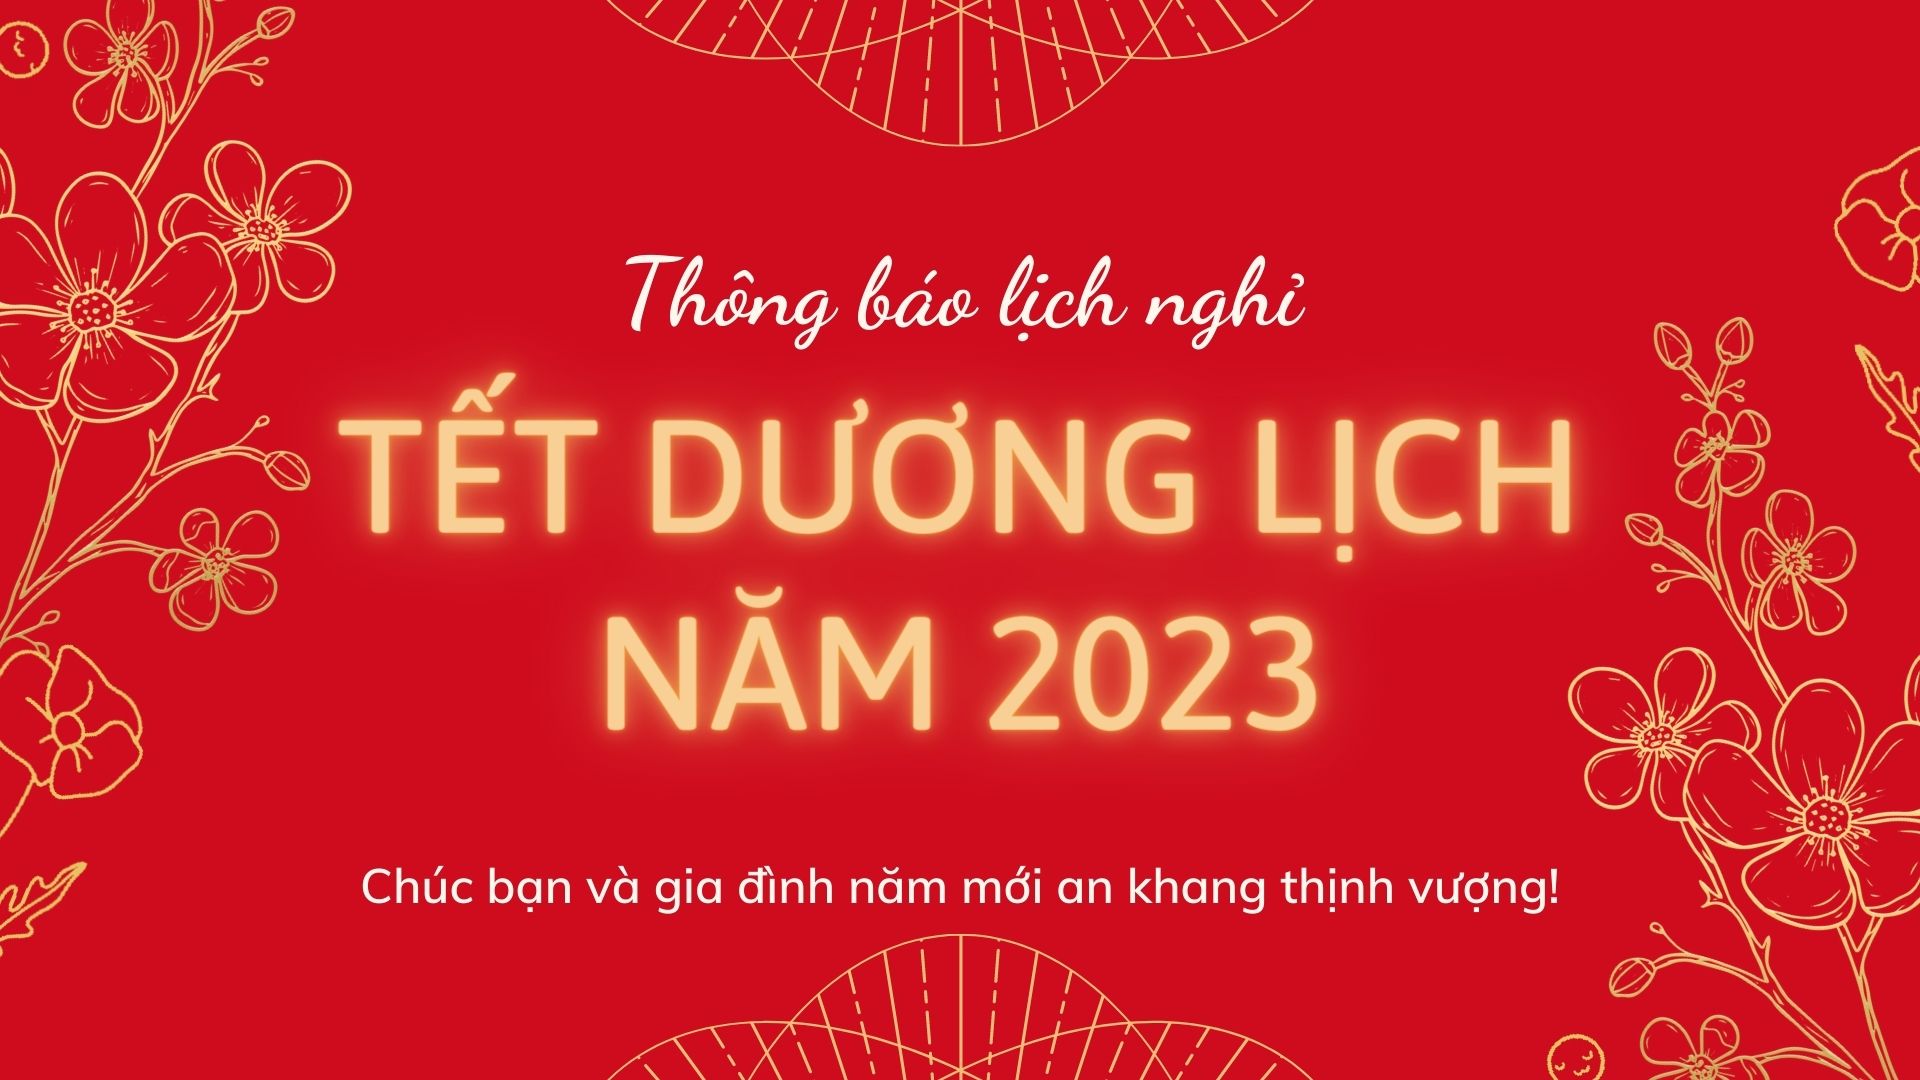 thong-bao-nghi-tet-duong-lich-nam-2023